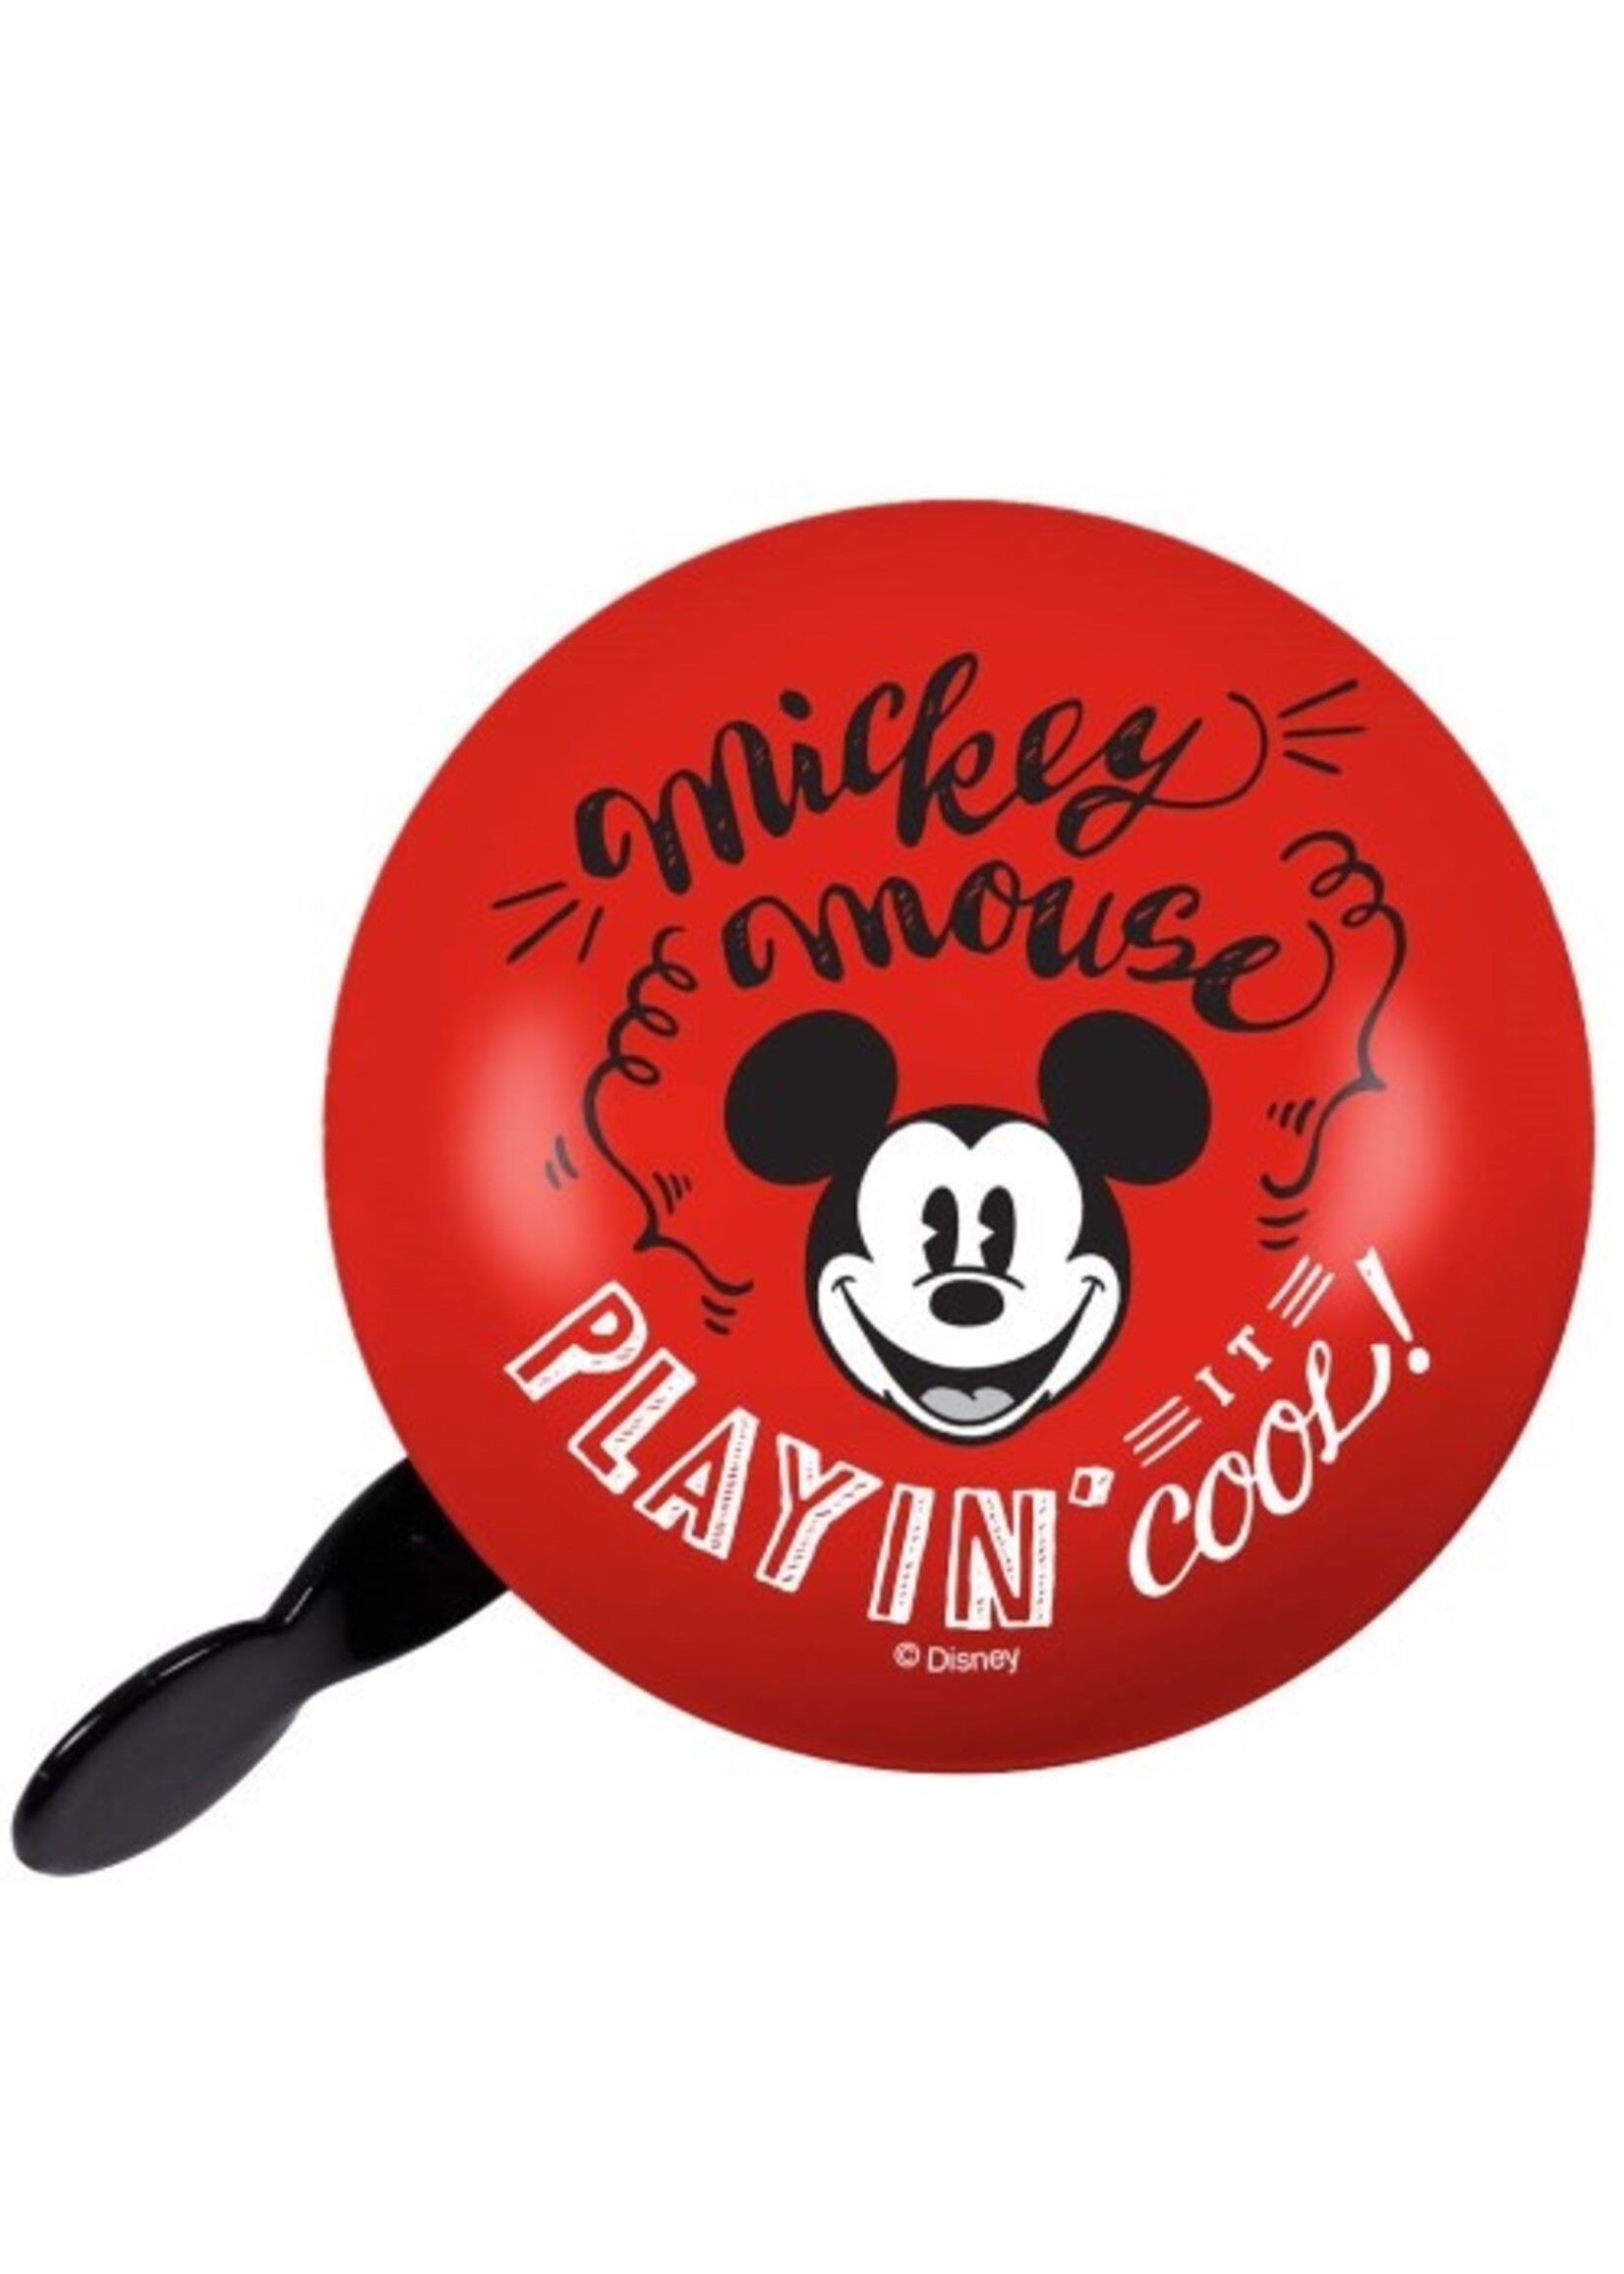 Disney Juniorski dzwonek rowerowy Mickey Mouse firmy Disney w kolorze czerwonym